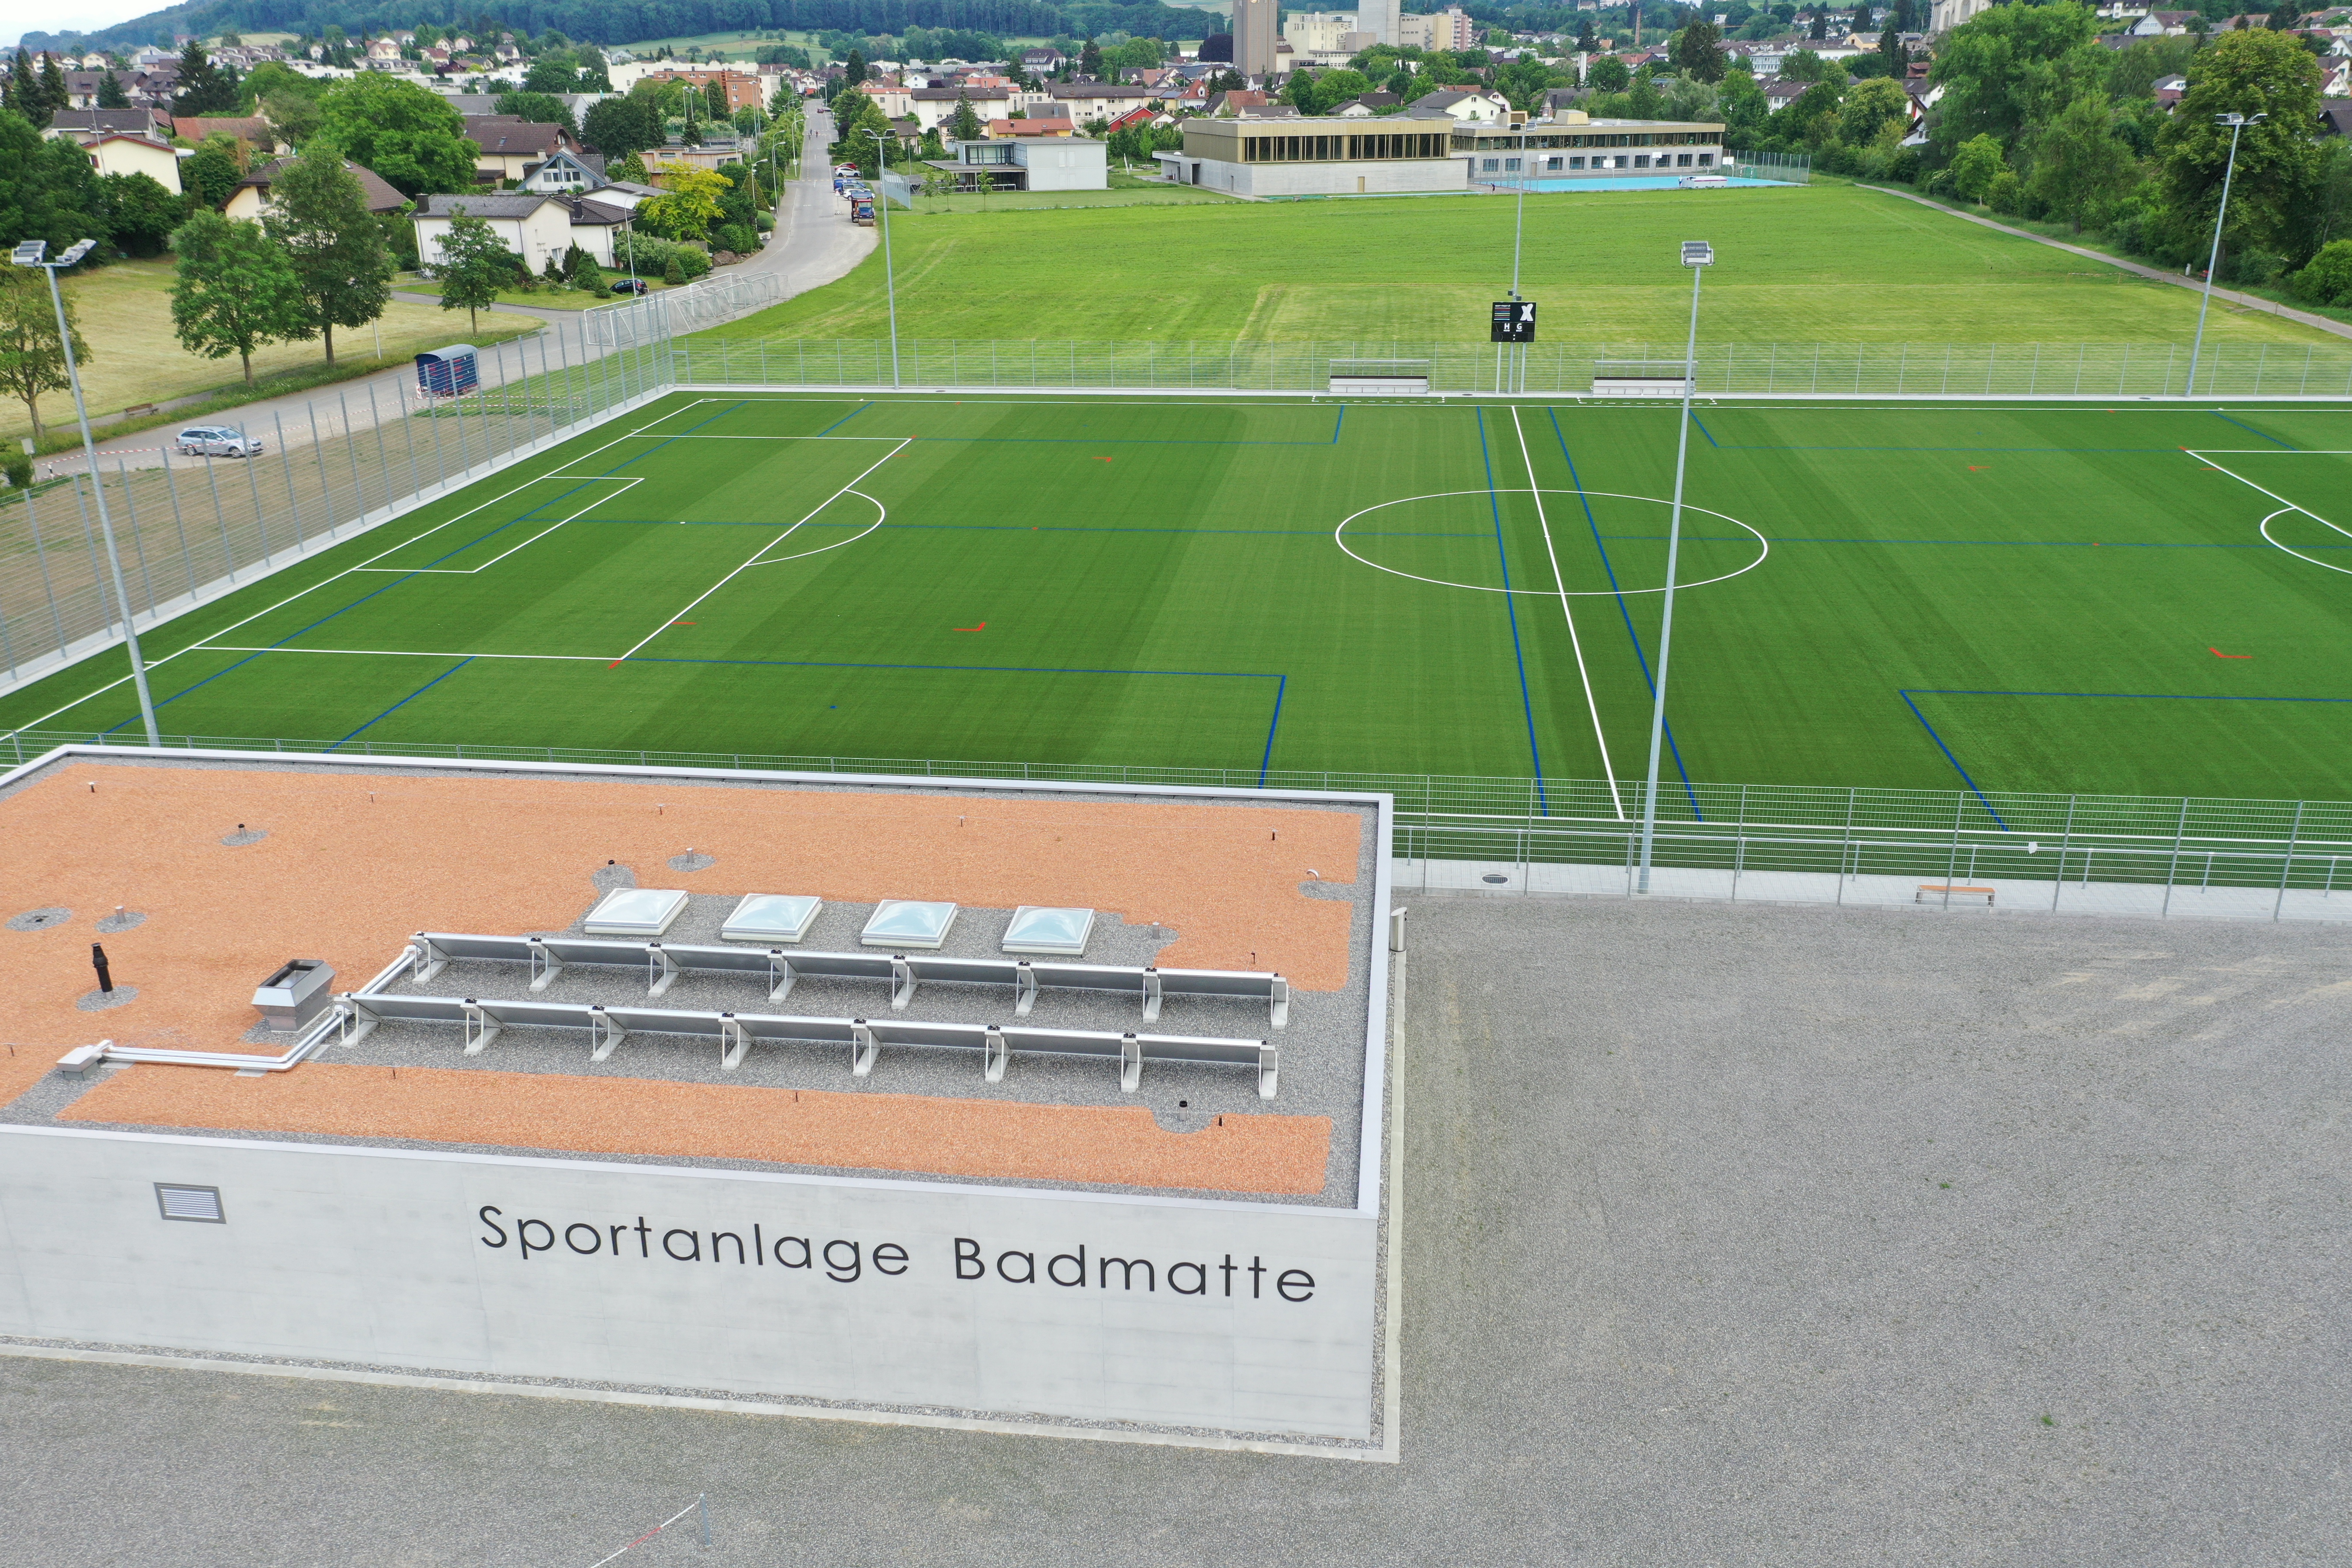 Sportanlage Badmatte - Stand der Bauarbeiten Ende Mai 2020